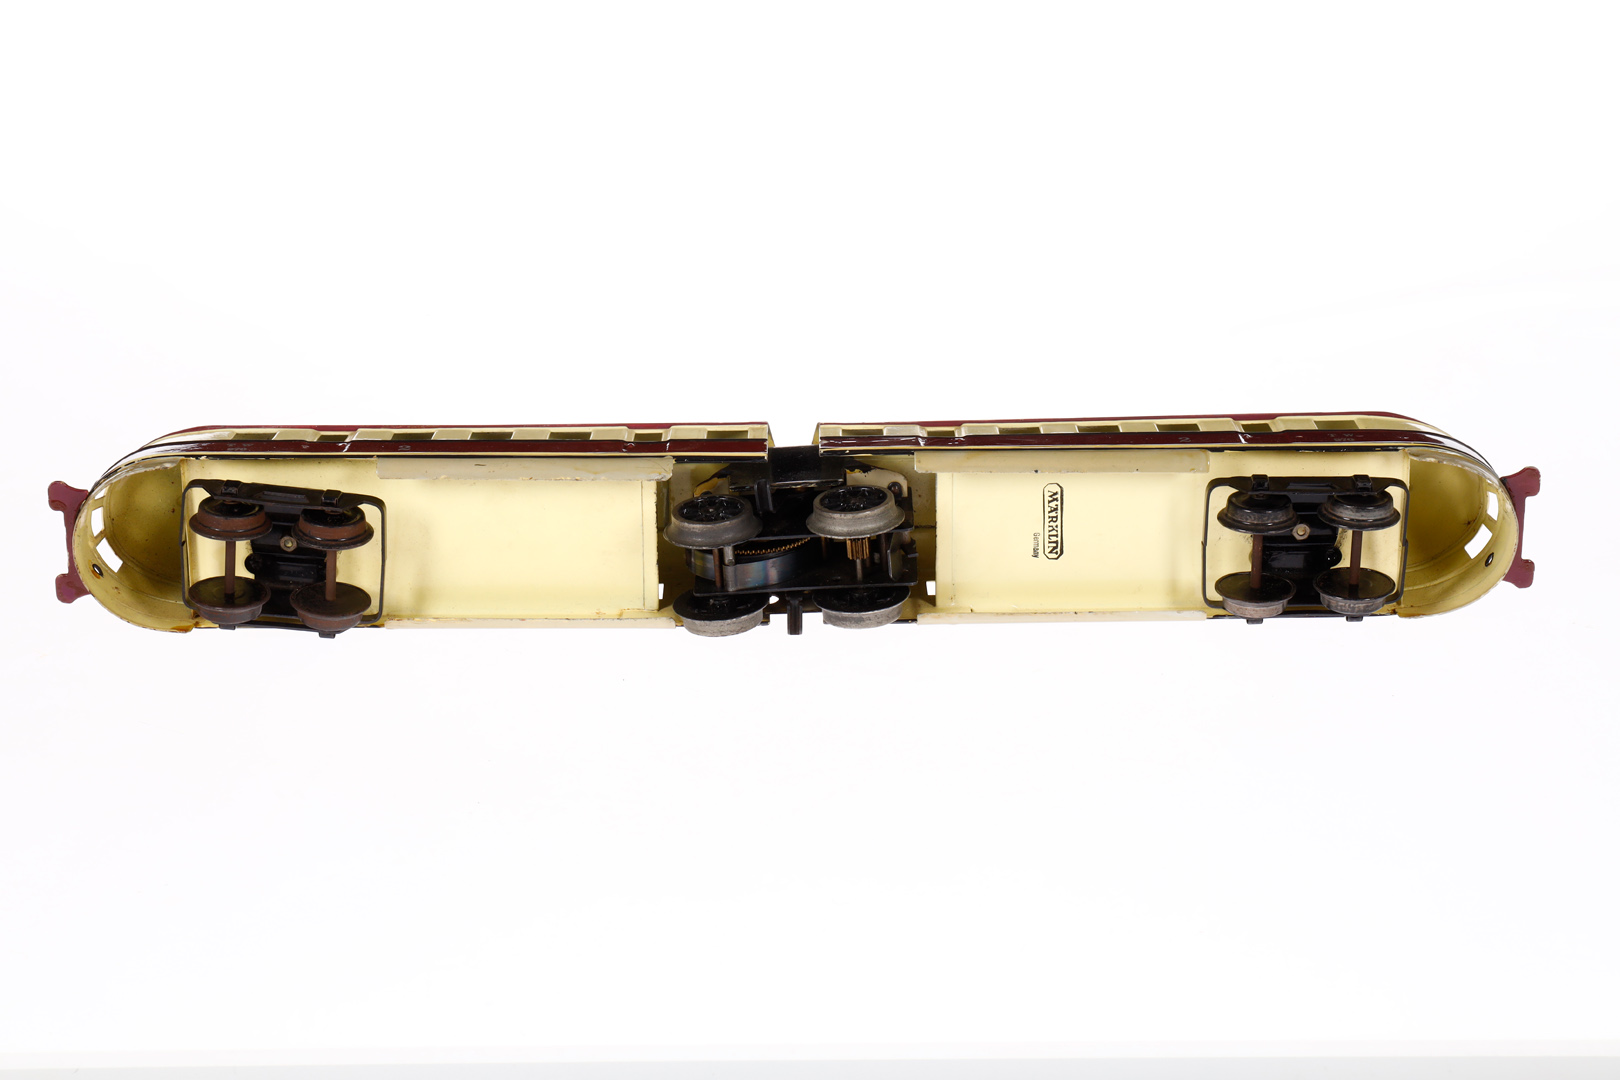 Märklin Triebwagen TW 970, Spur 0, Uhrwerk intakt, creme/violett, LS und gealterter Lack, im tw - Image 4 of 5